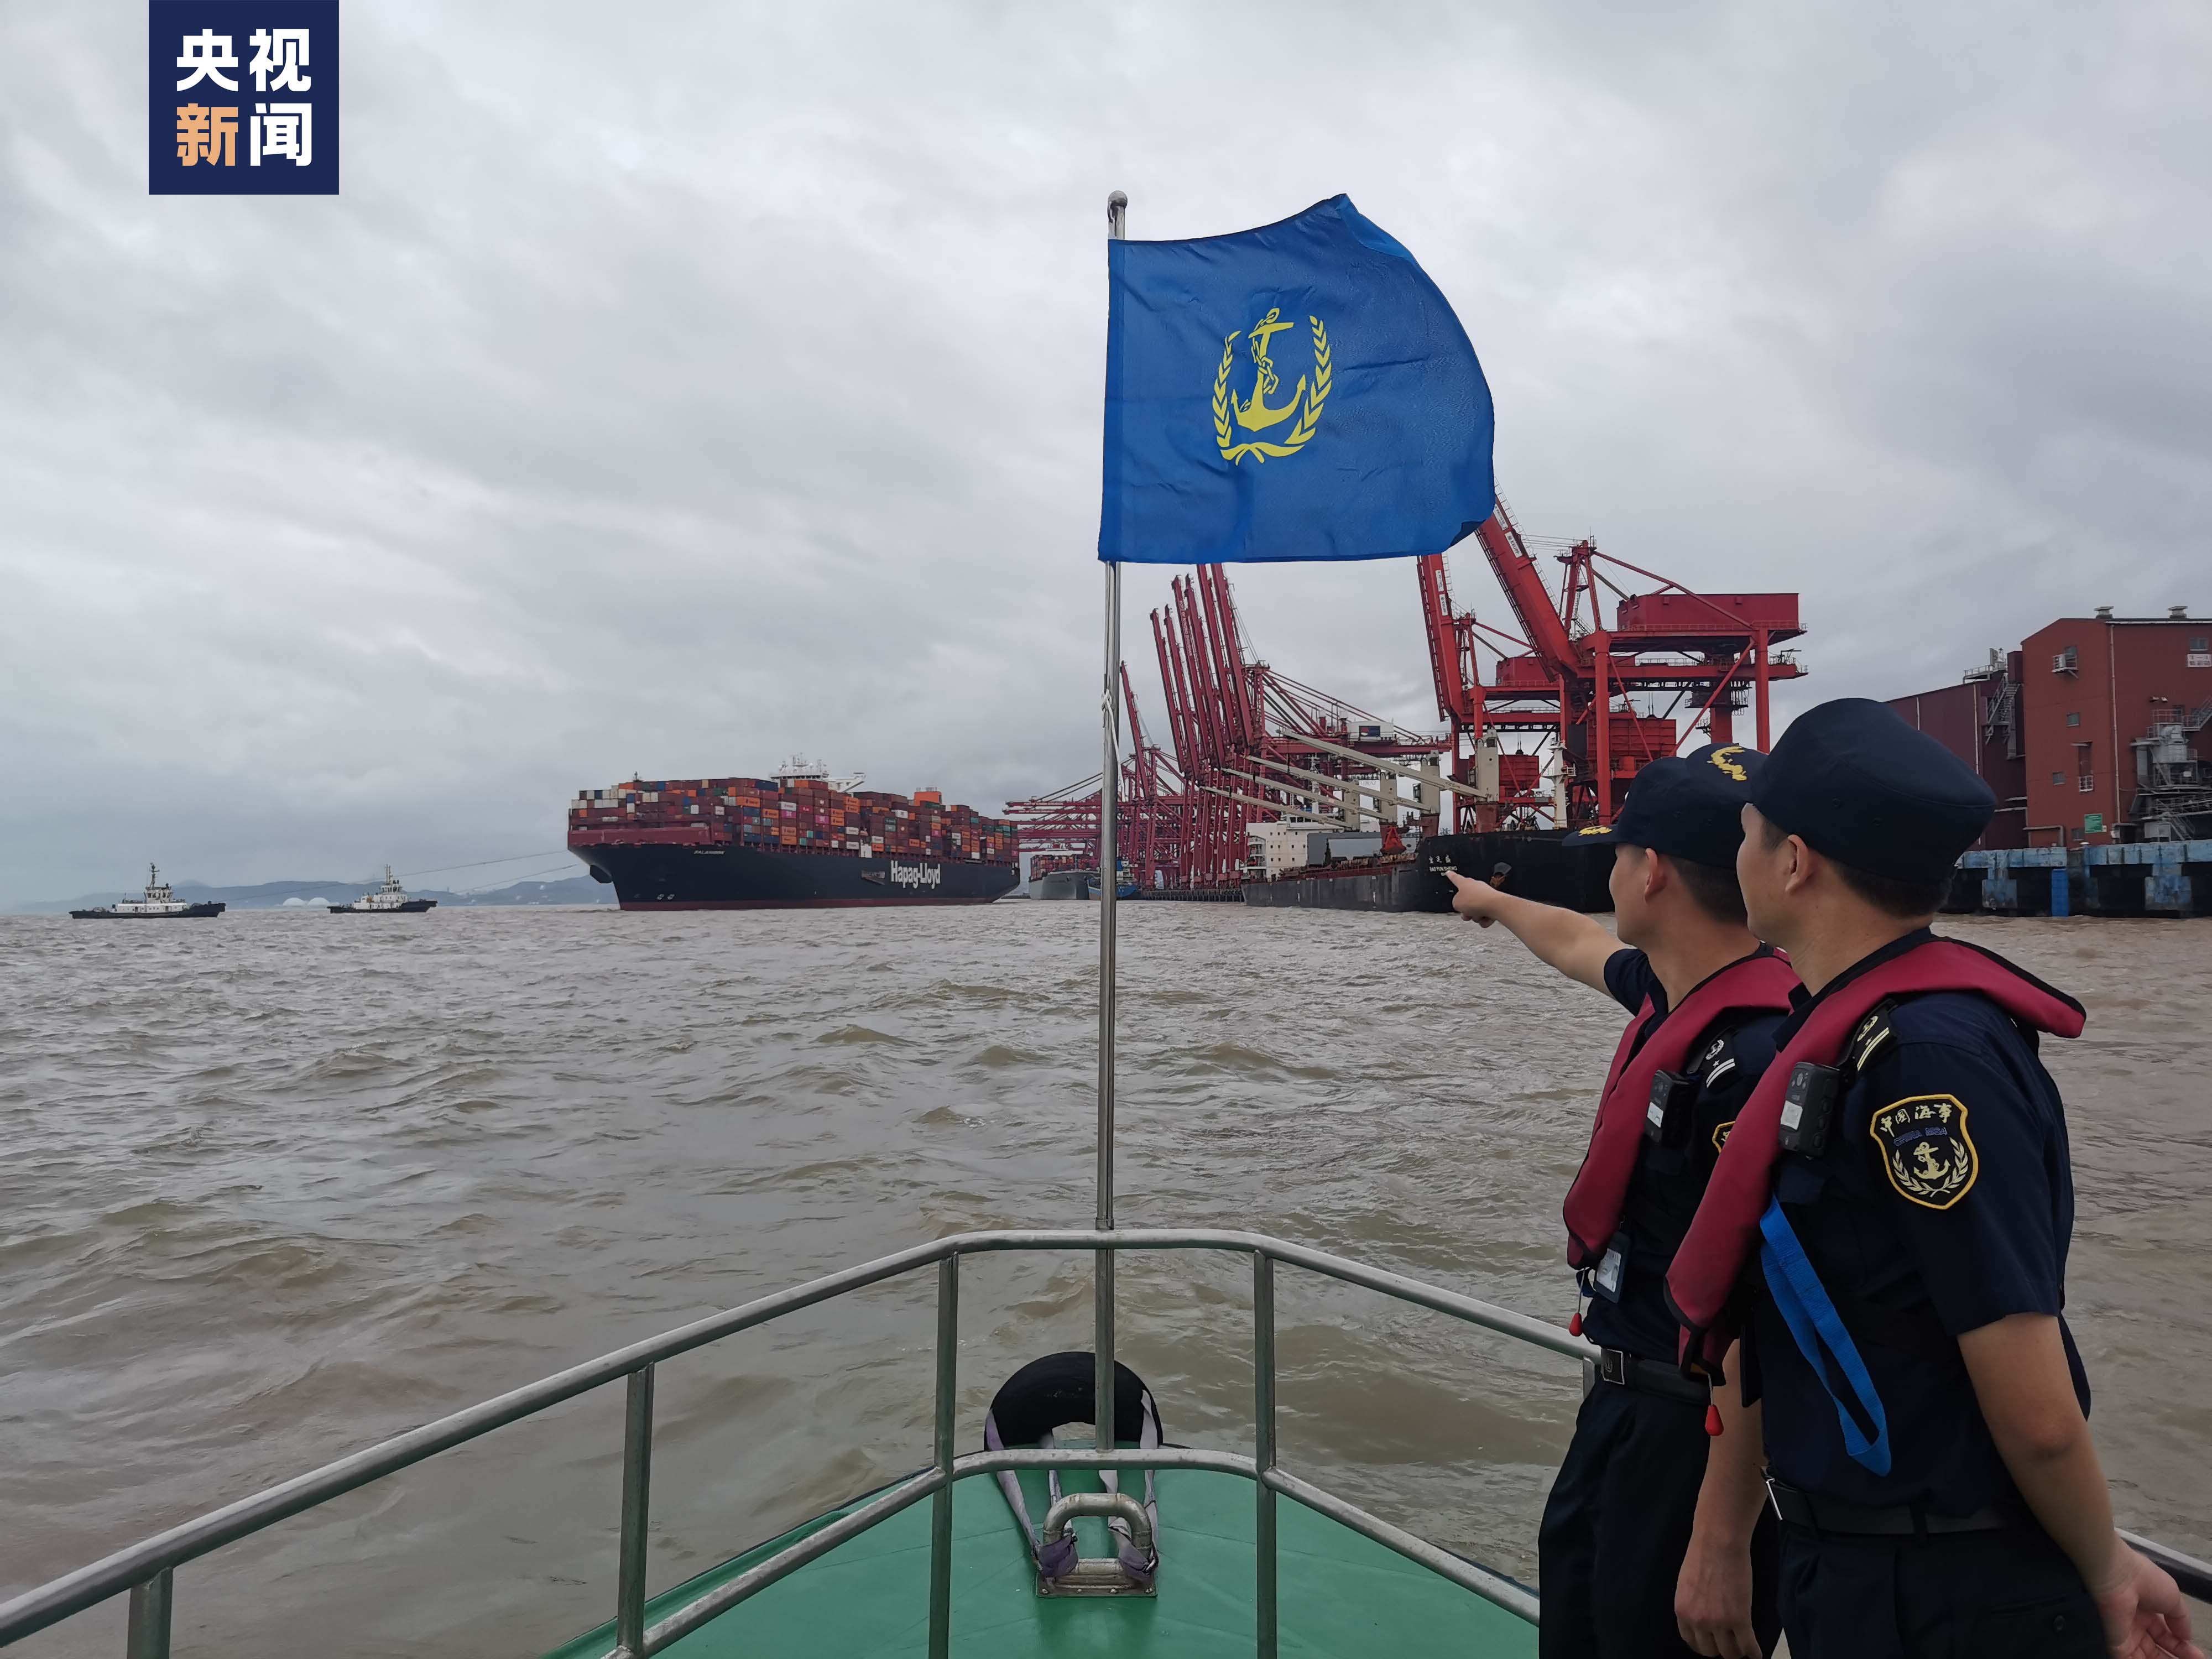 客船停航、工程停工……浙江宁波沿海拉响Ⅱ级防台警报